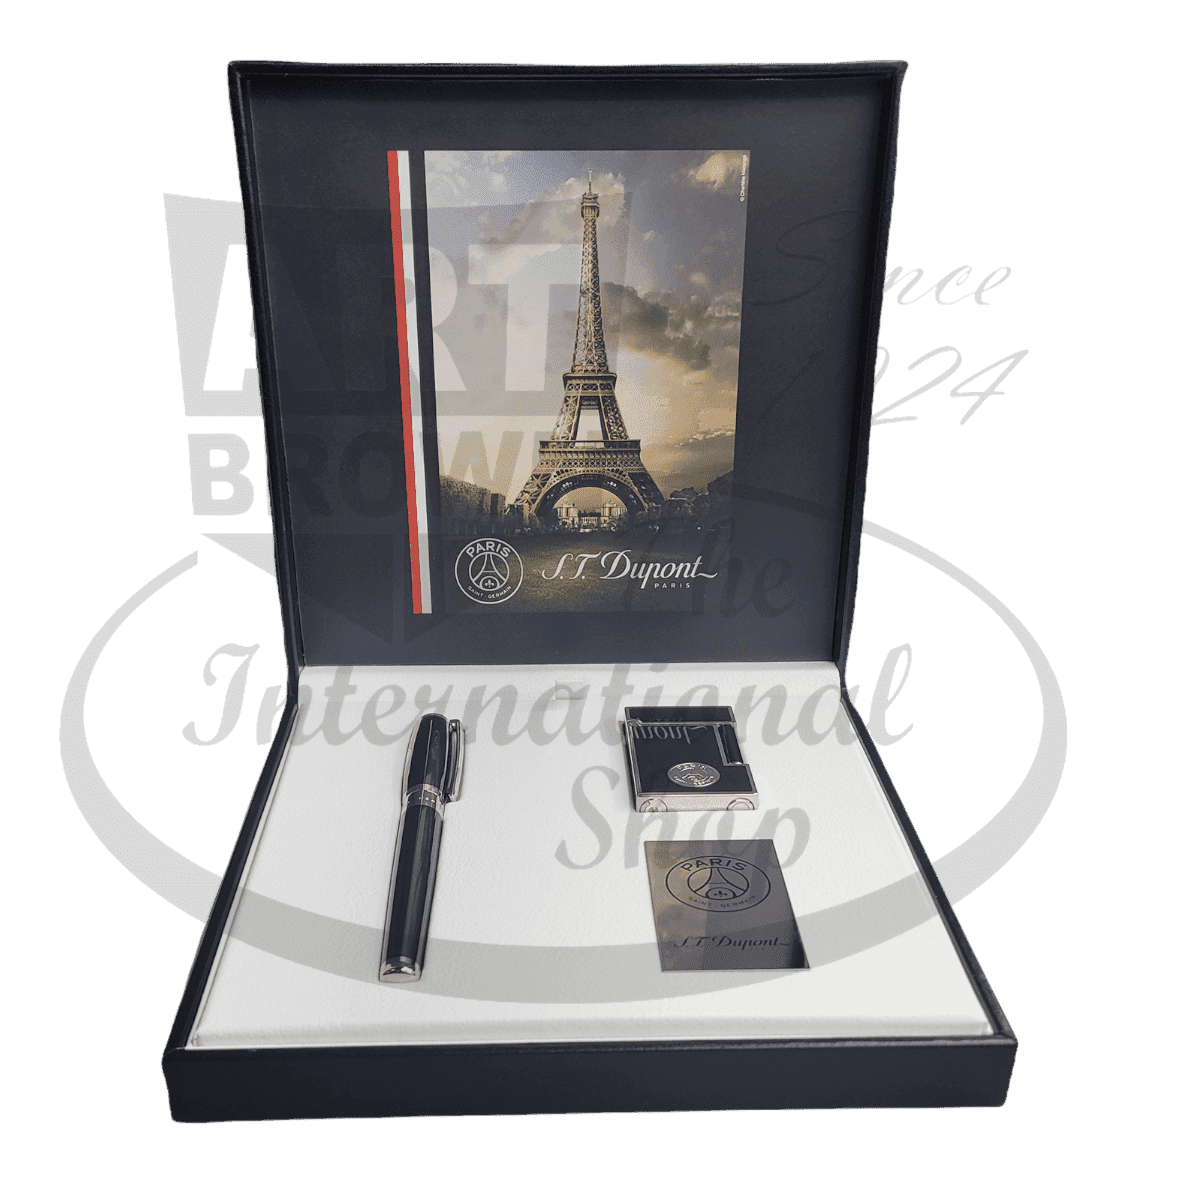 S.T. Dupont Chinese Lacquer Fountain Pen & Lighter Set, Paris Saint-Germain, SETPSG